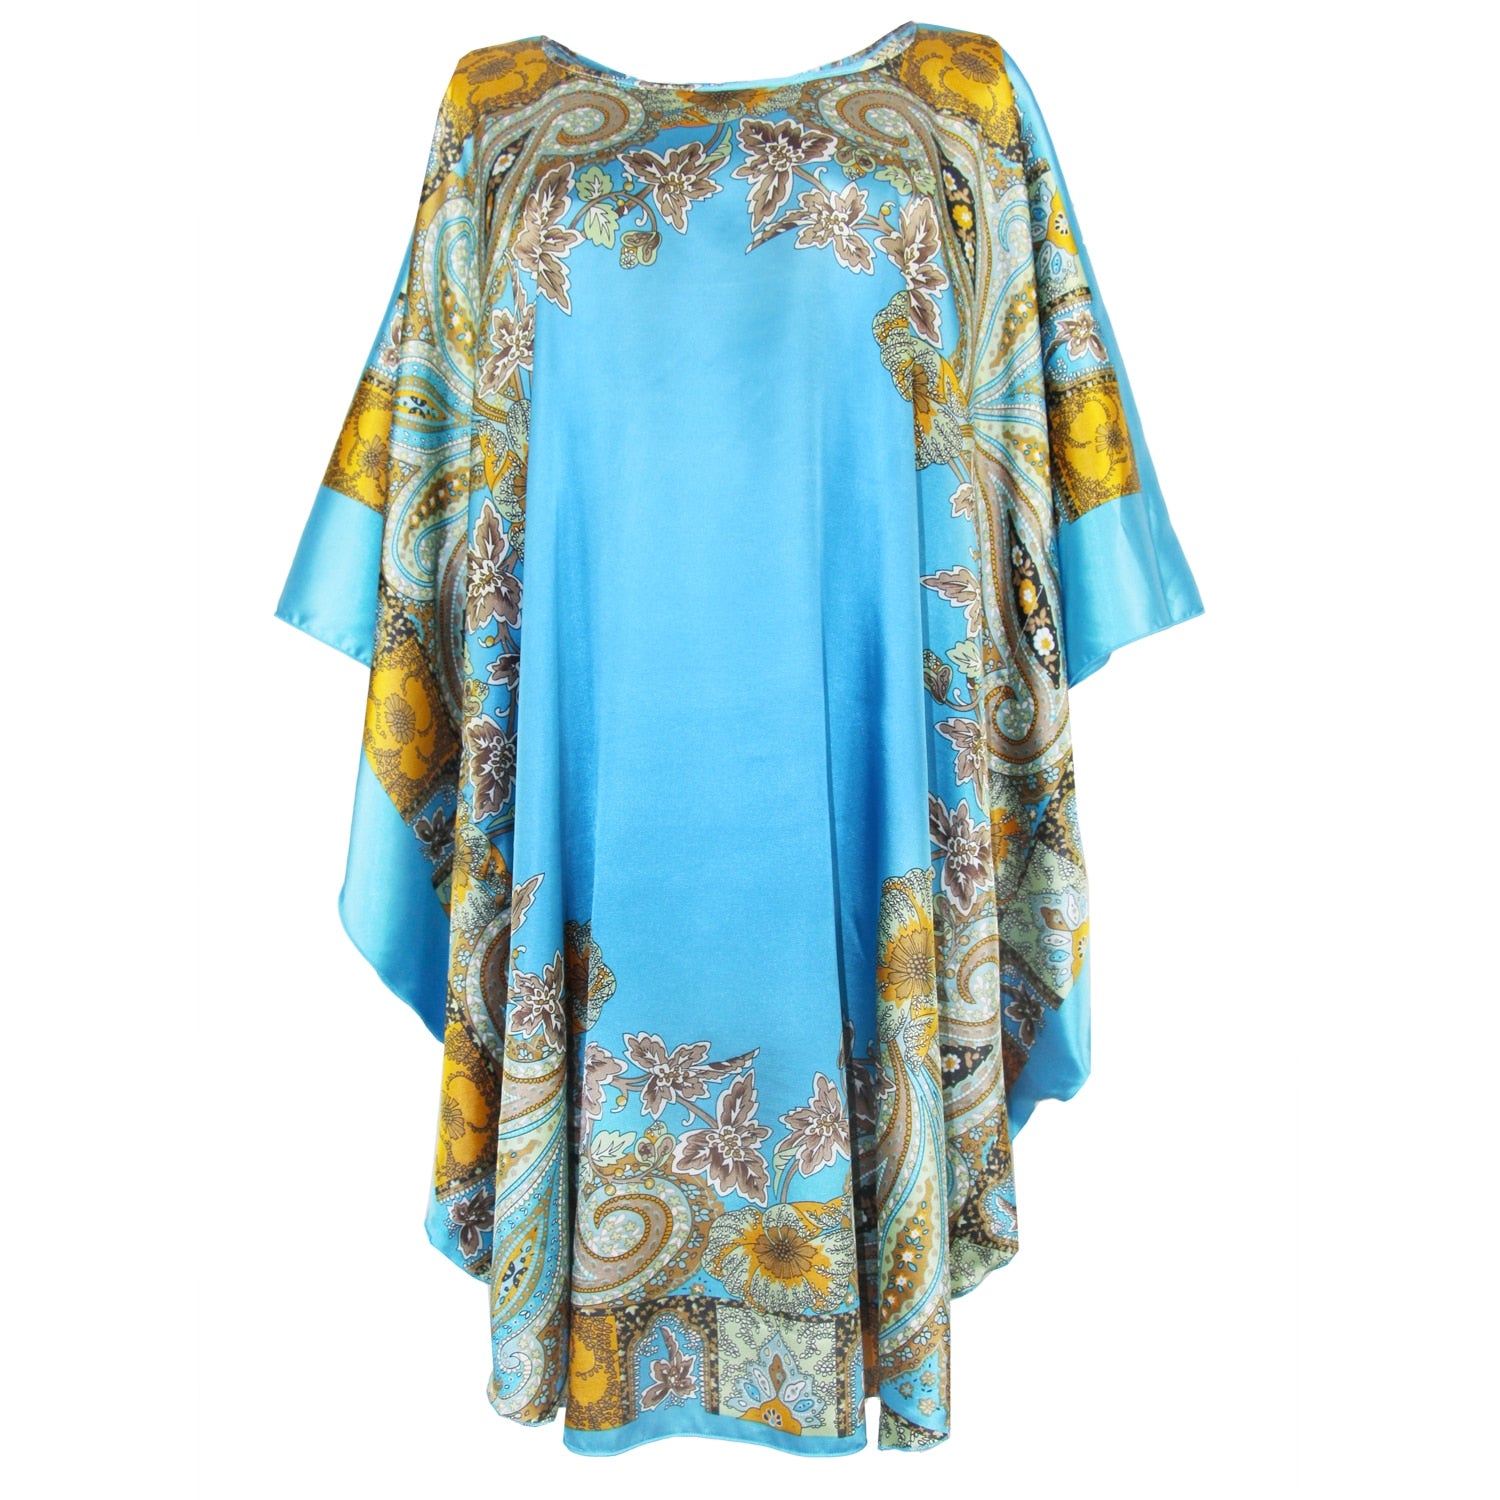 Sexy Female Silk Rayon Robe Bath Gown Nightgown Summer Casual Home Dress Printed Loose Sleepwear Plus Size Nightwear Bathrobe